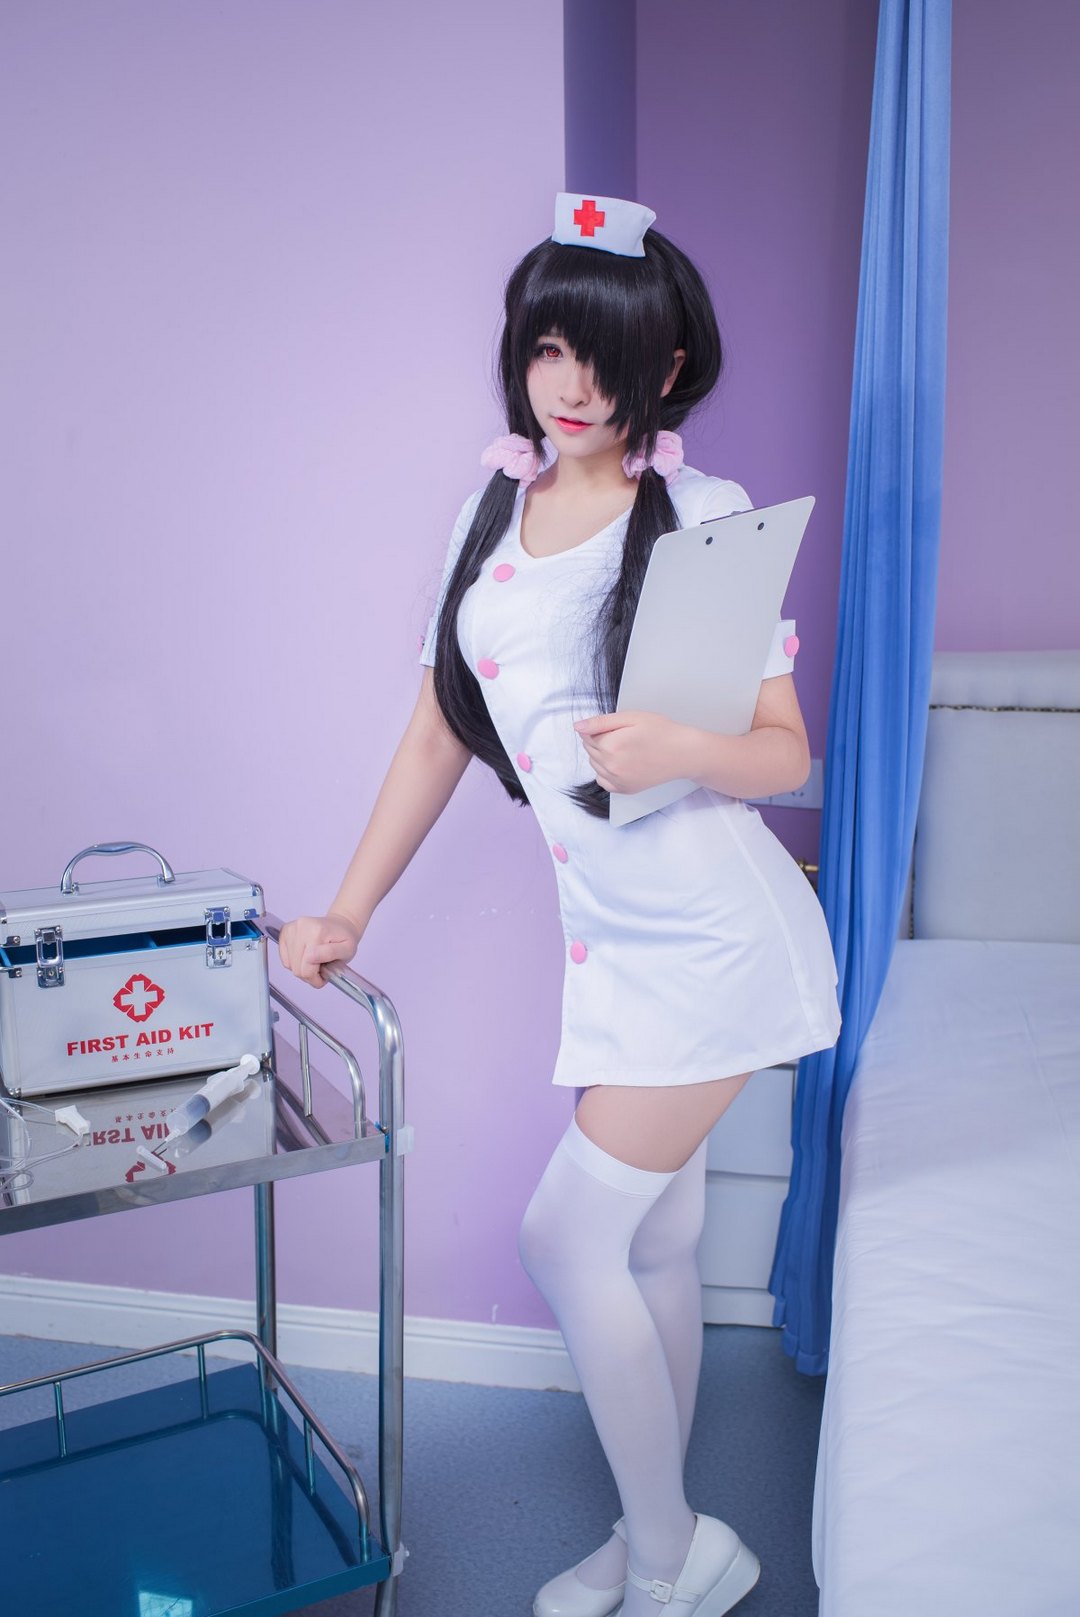 白丝护士制服美女cosplay时崎狂三同人图片